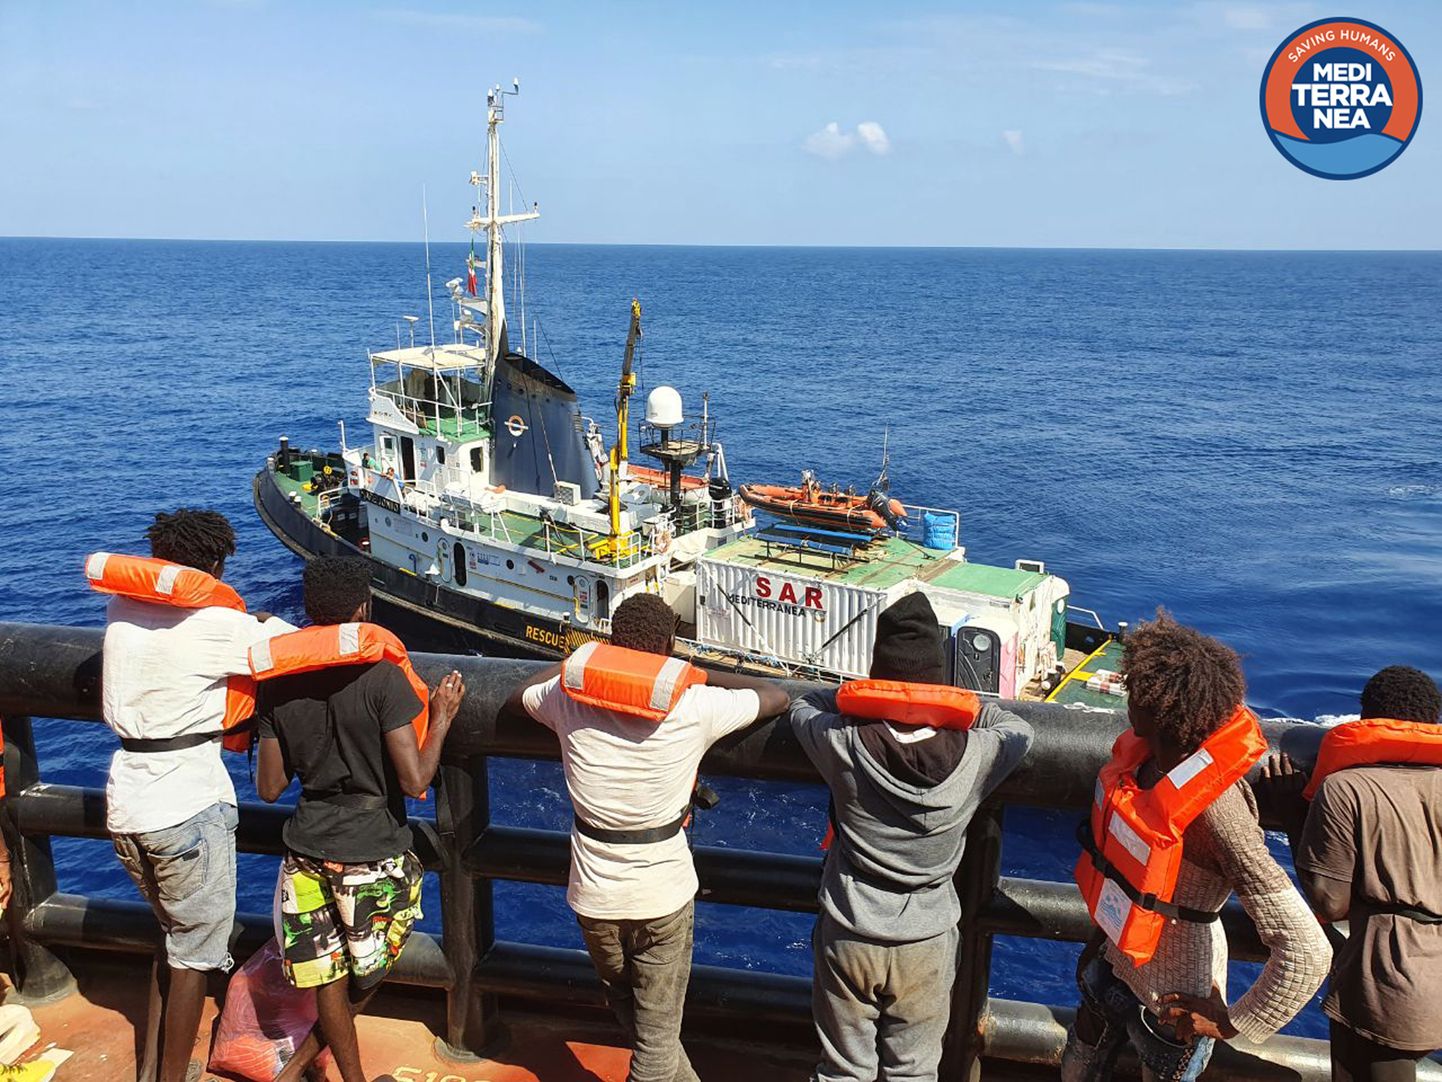 Migrandid ootavad Maersk Etienne'il päästelaeva Mare Jonio pardale minekut 11. september 2020.